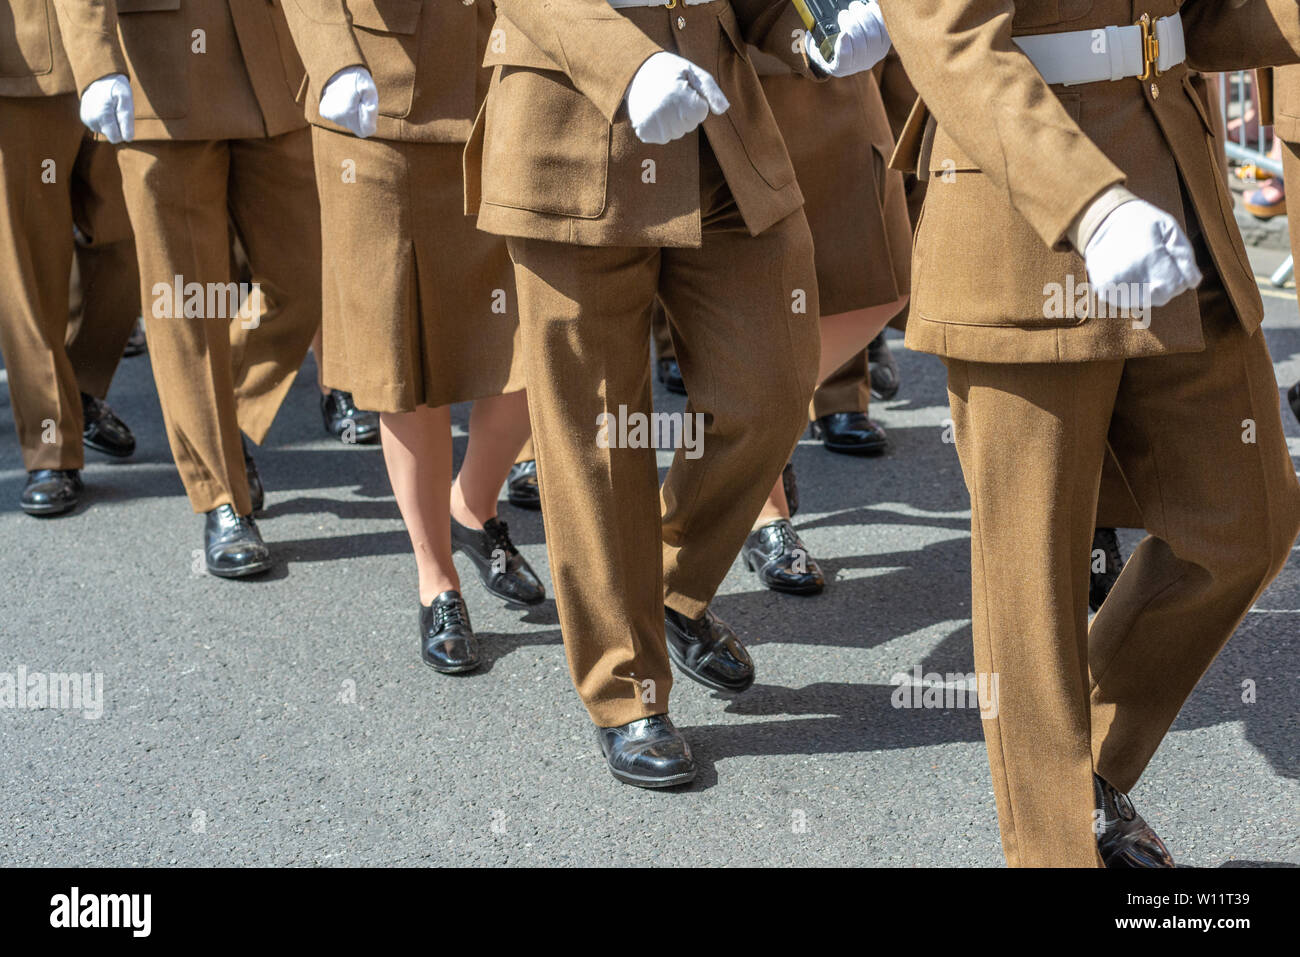 Día de las Fuerzas Armadas, Salisbury, Wiltshire, Reino Unido. 29th de junio de 2019. Miembros de las fuerzas armadas marchan frente a grandes multitudes en un desfile mientras serpentea alrededor del centro de la ciudad bajo el sol caliente. Foto de stock